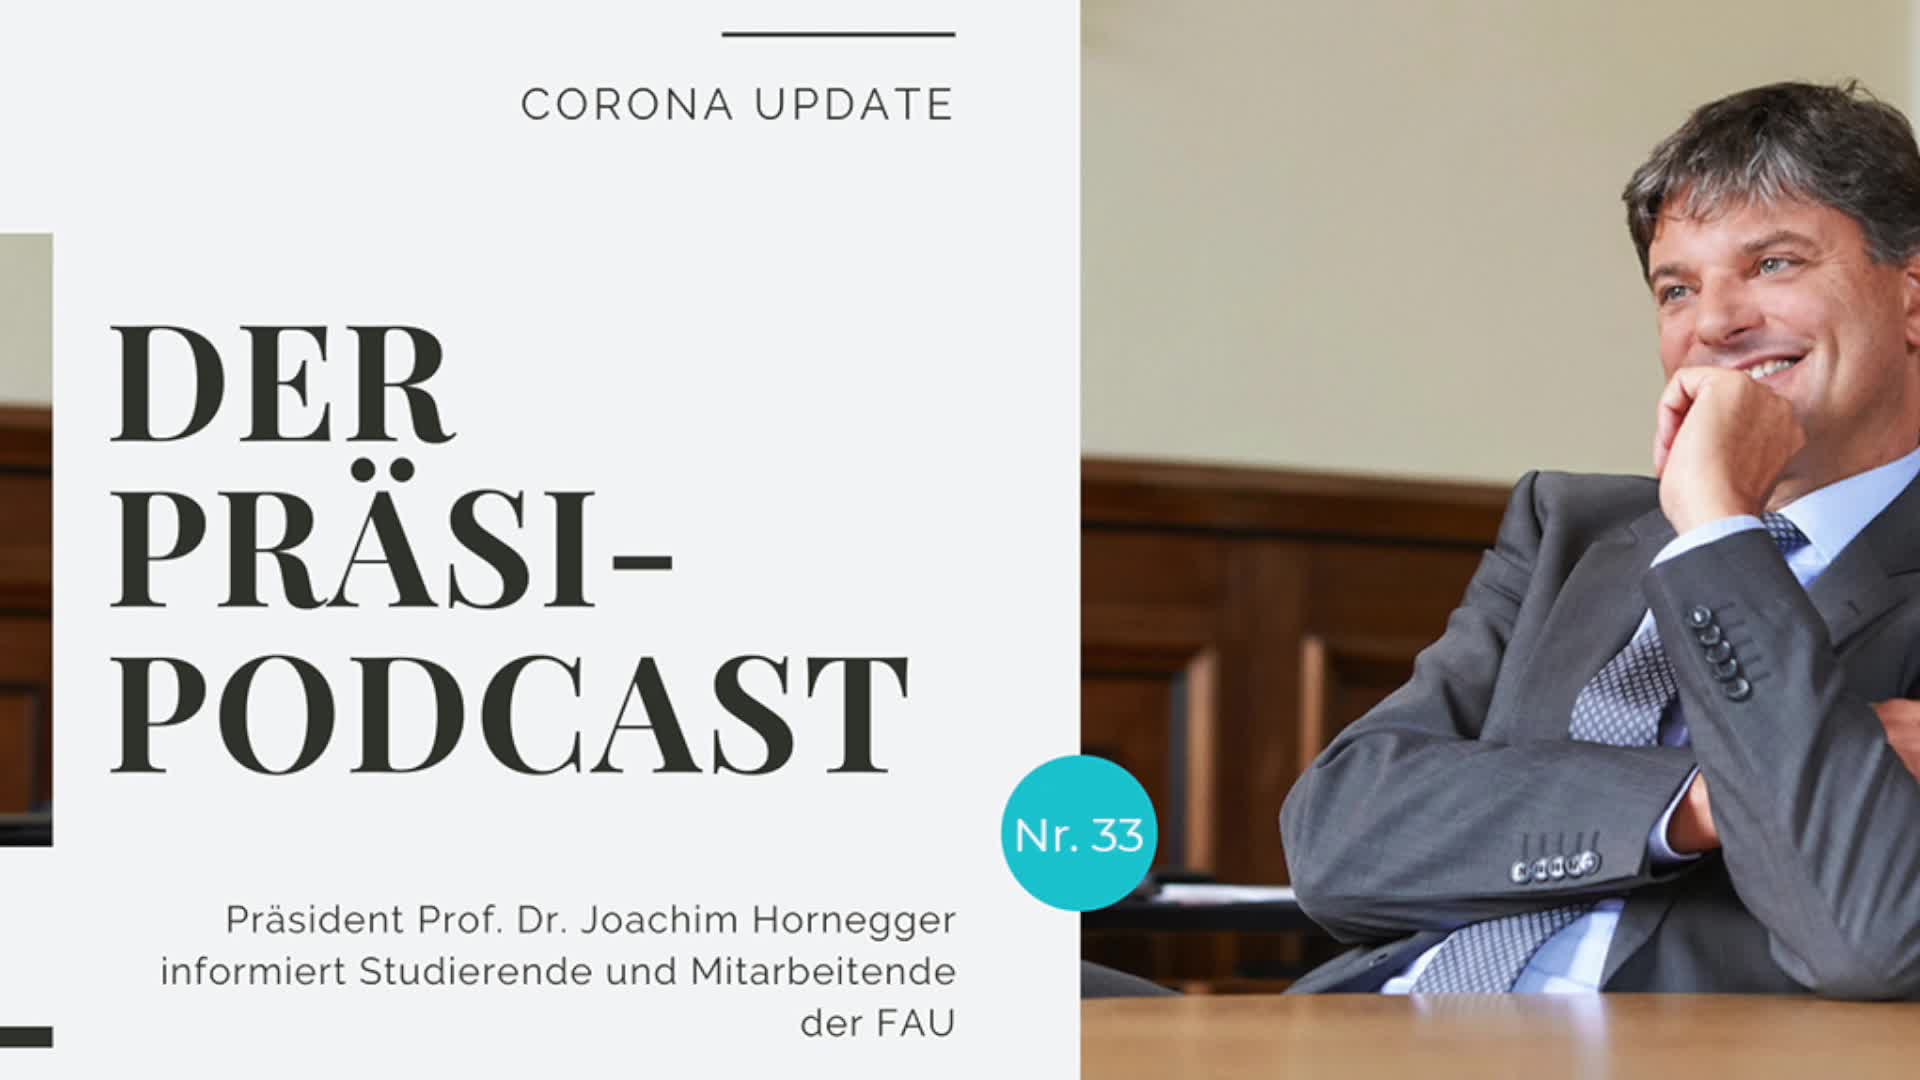 „Der Präsi-Podcast“ vom 08. Dezember 2020 preview image